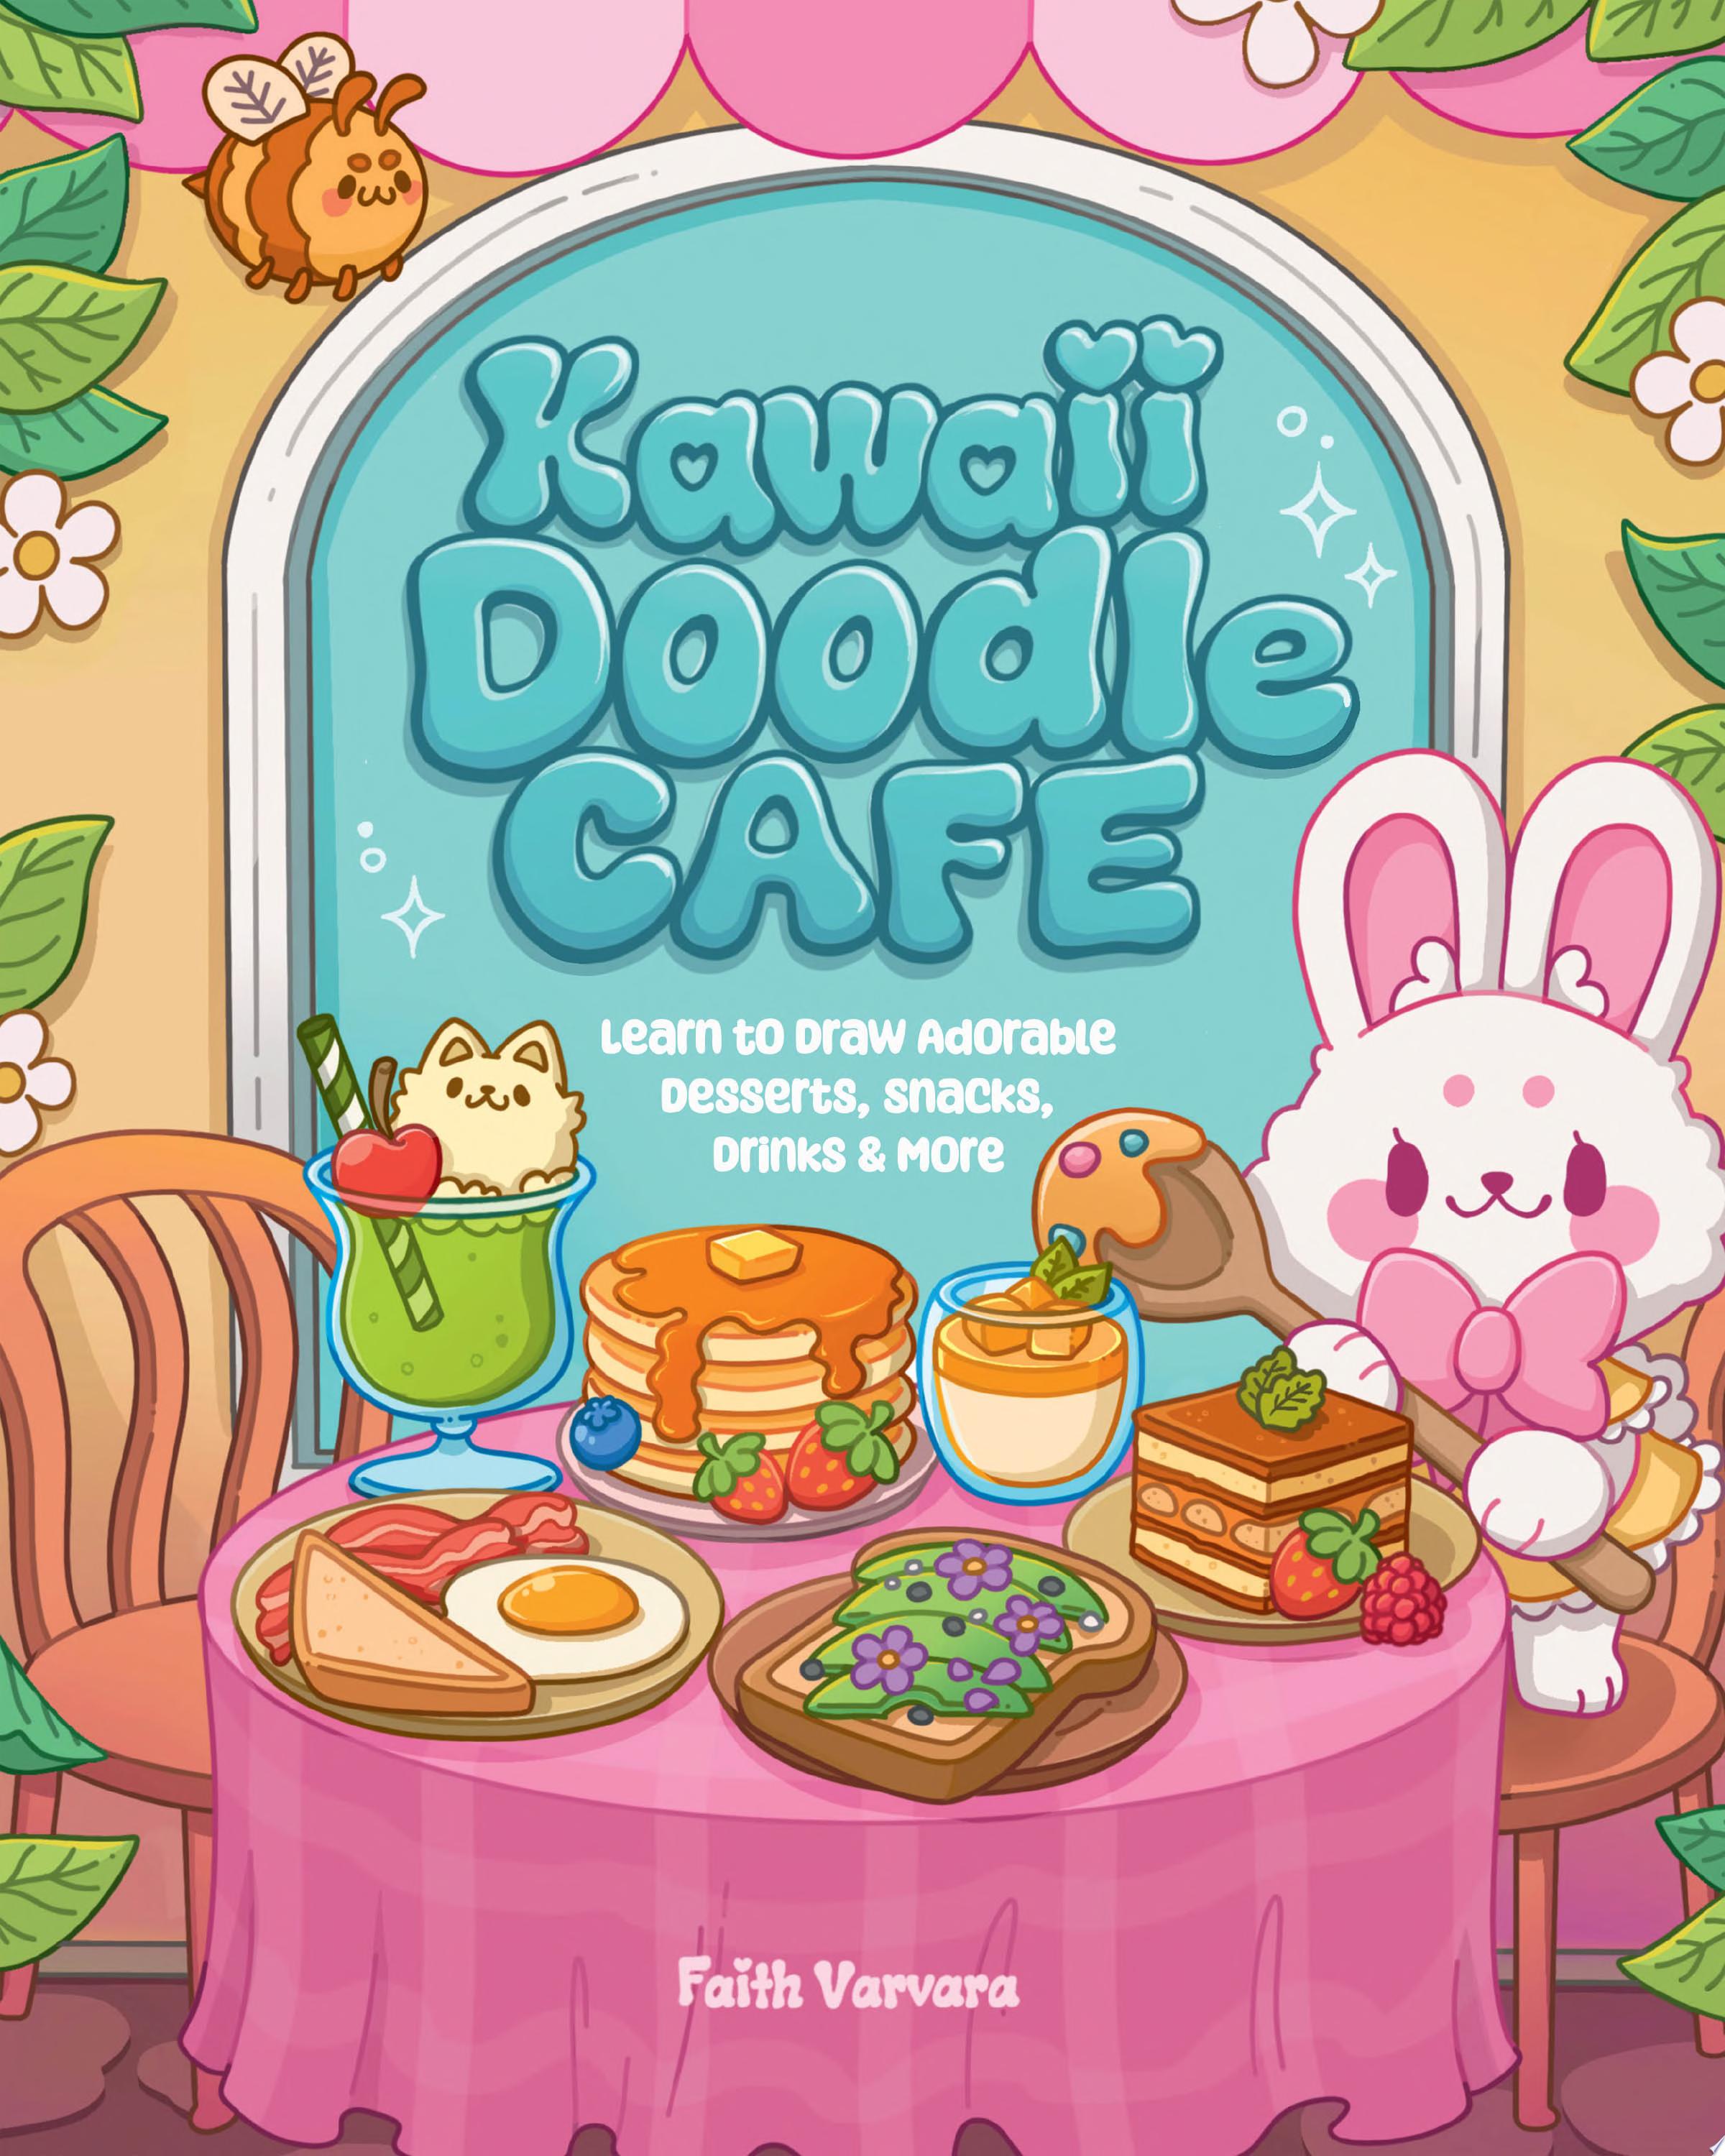 Image for "Kawaii Doodle Café"